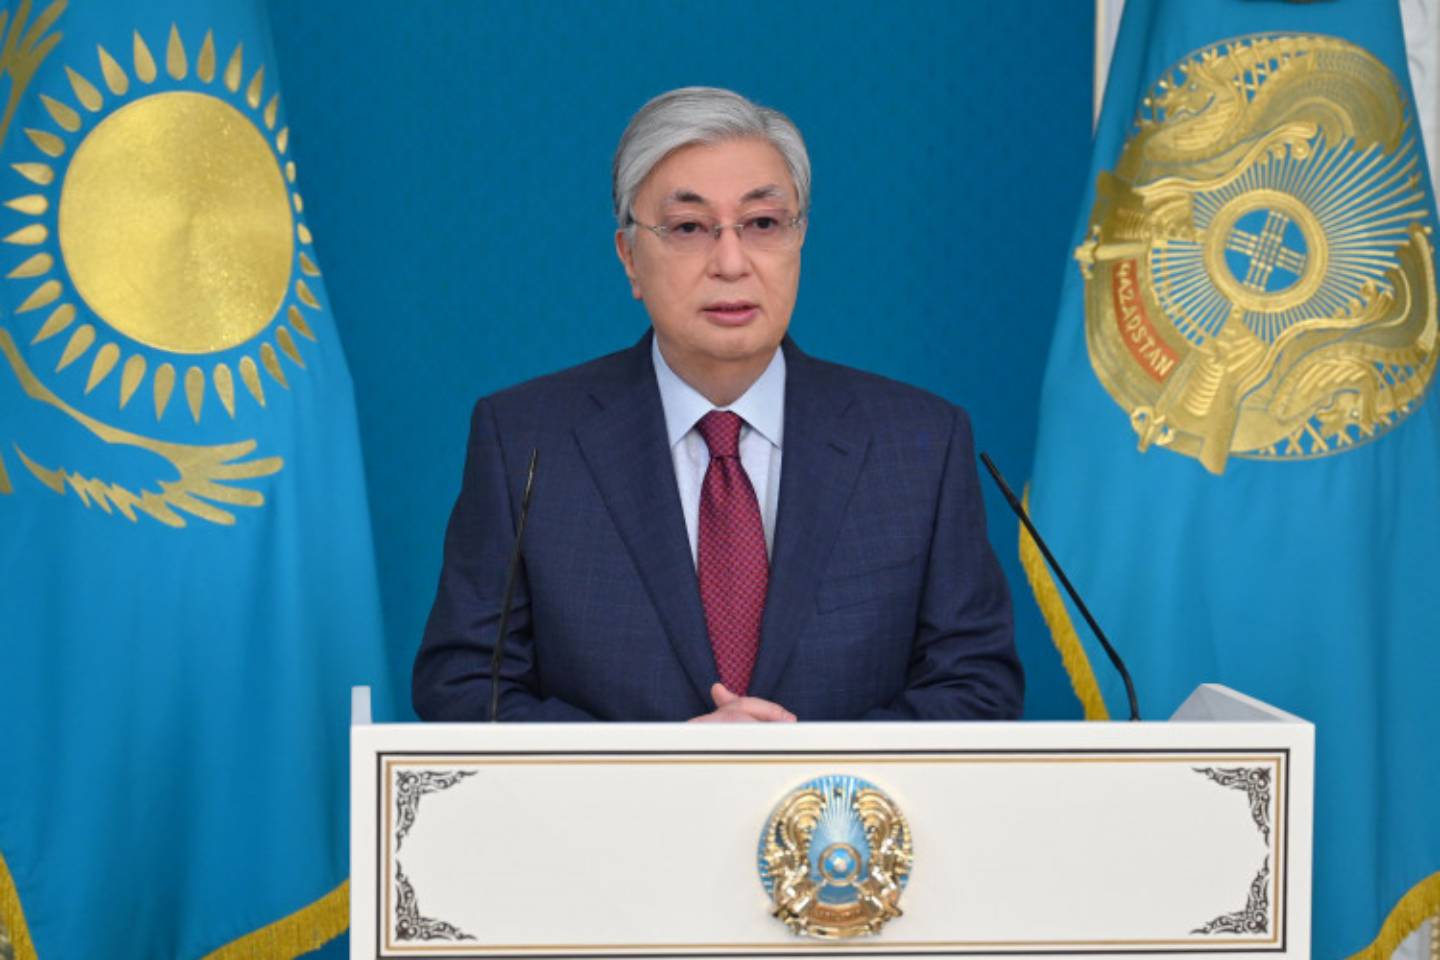 Новости мира / Политика в мире / "Зеленая" экономика и возобновляемая энергетика: какие изменения ждут Казахстан